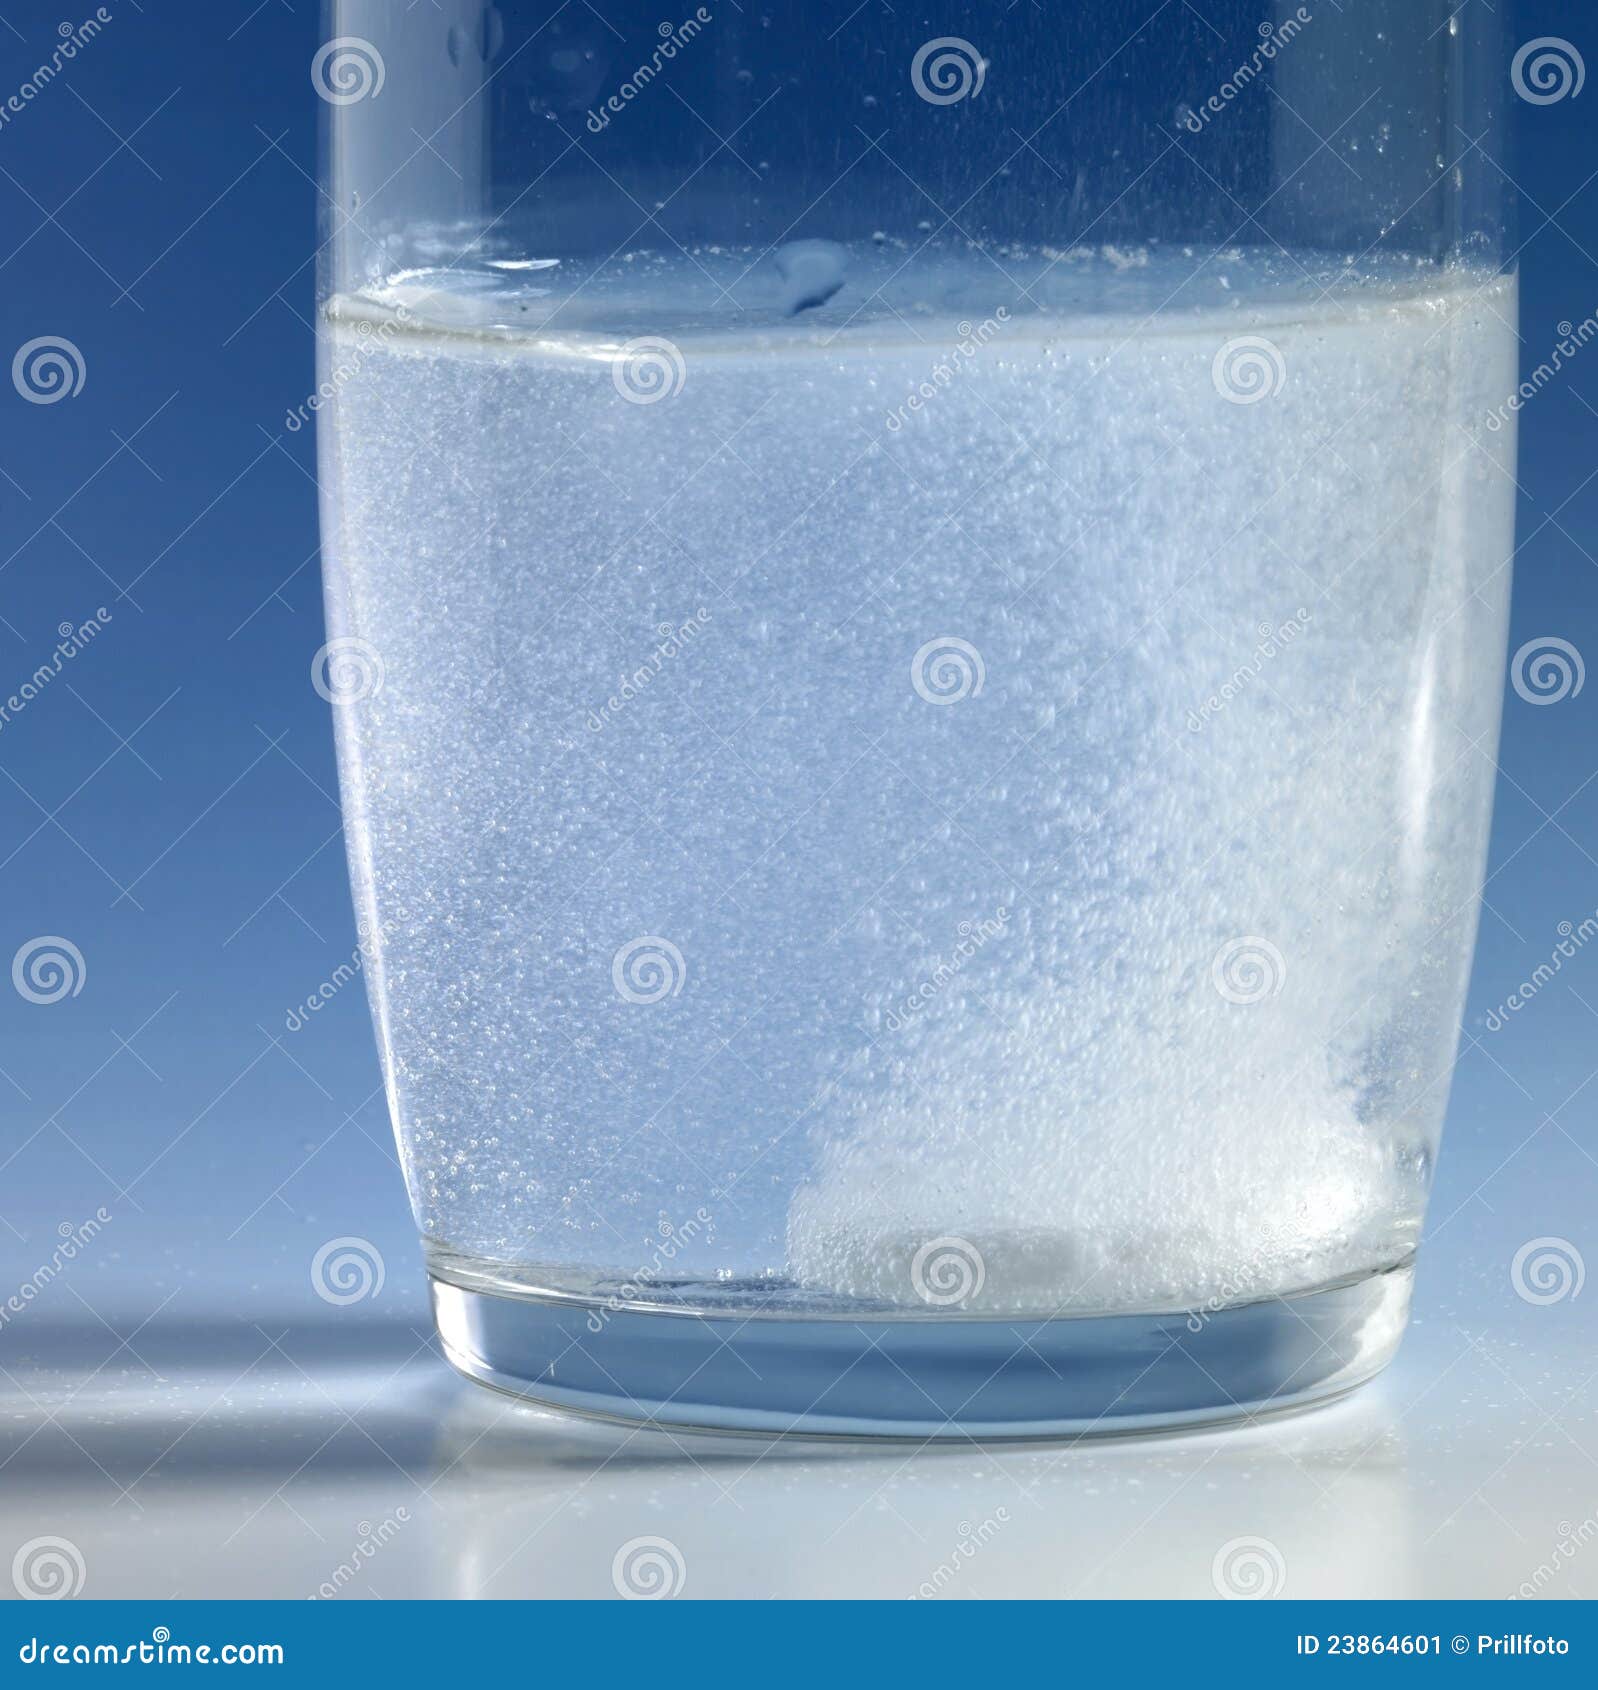 Туалетная вода растворяется в воде. Сахар в воде. Растворение в воде. Стакан воды. Растворение соли в стакане воды.